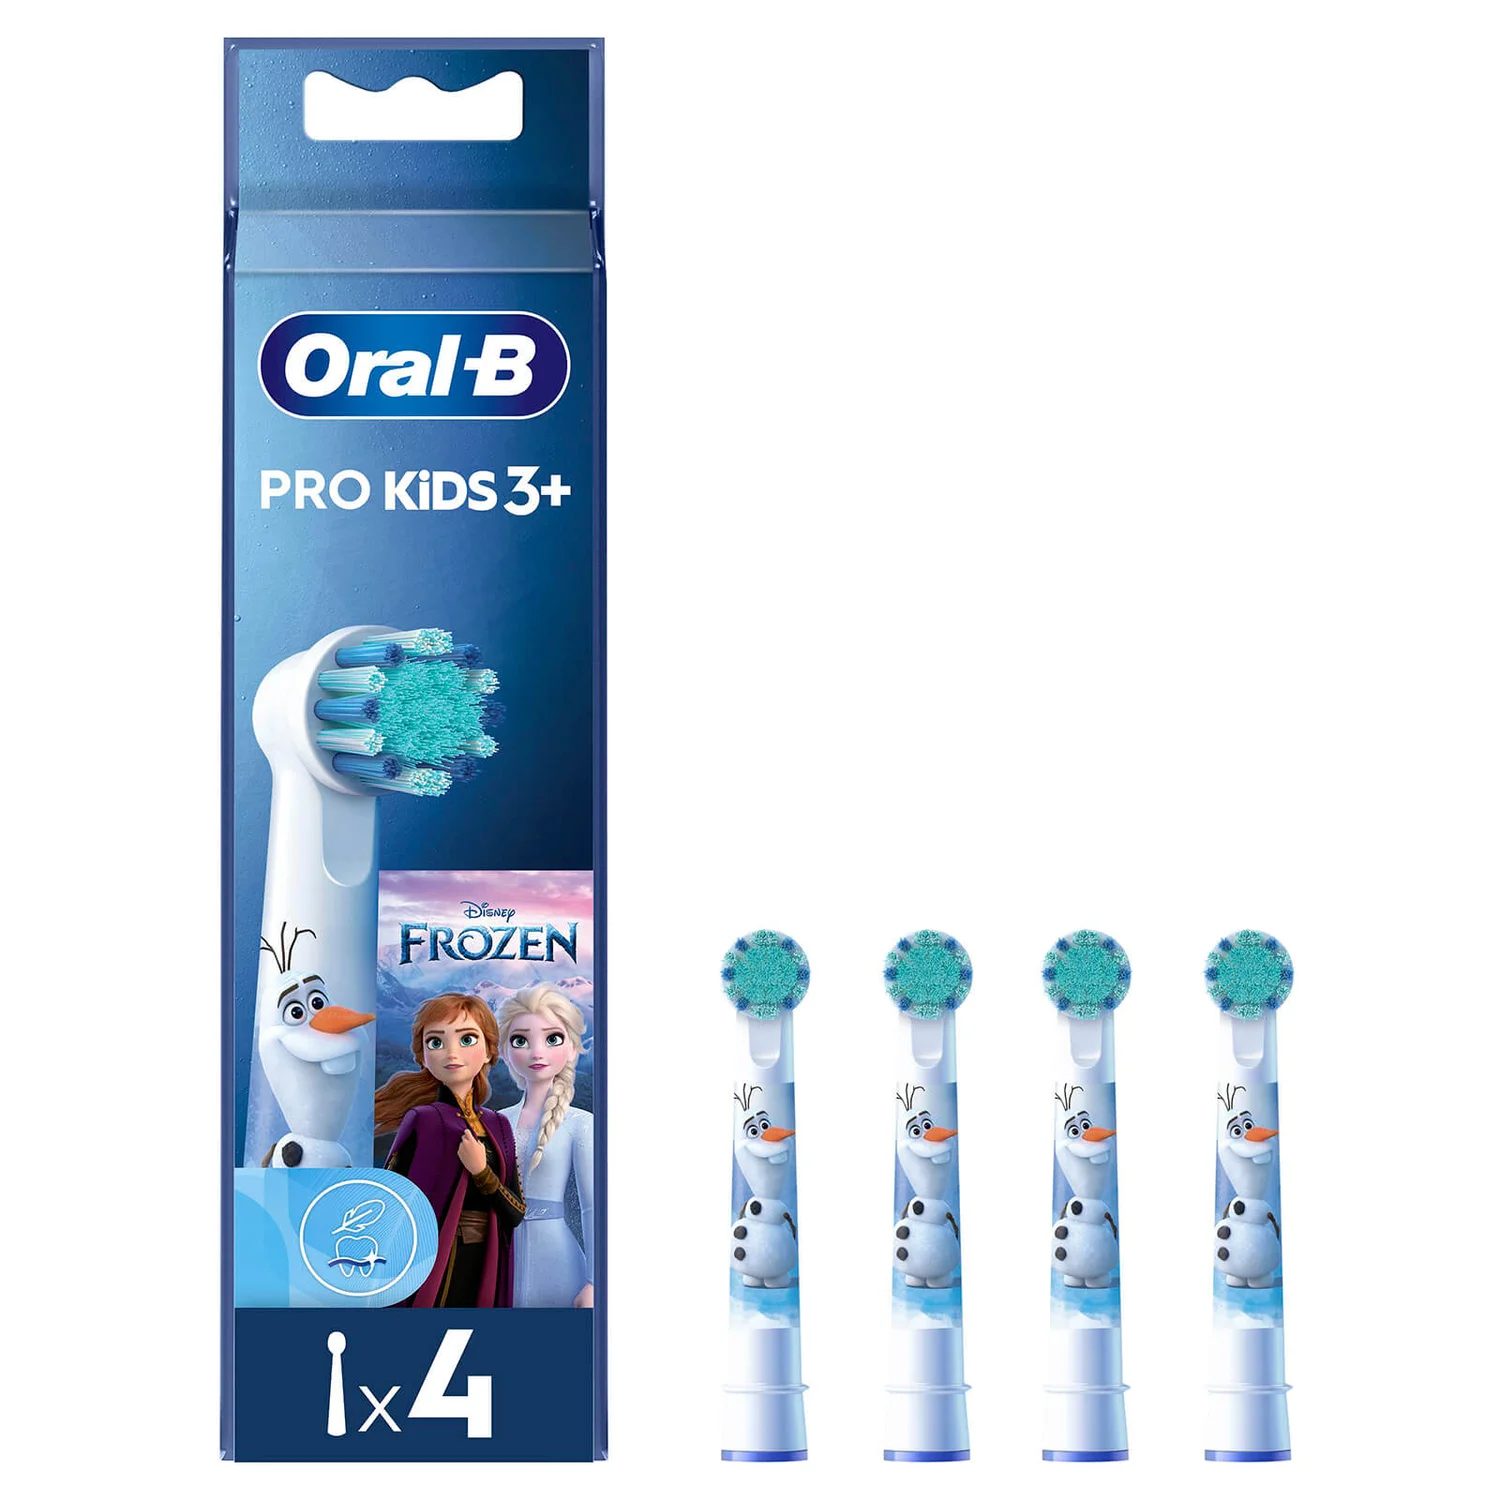 Oral-B Pro Kids 3+